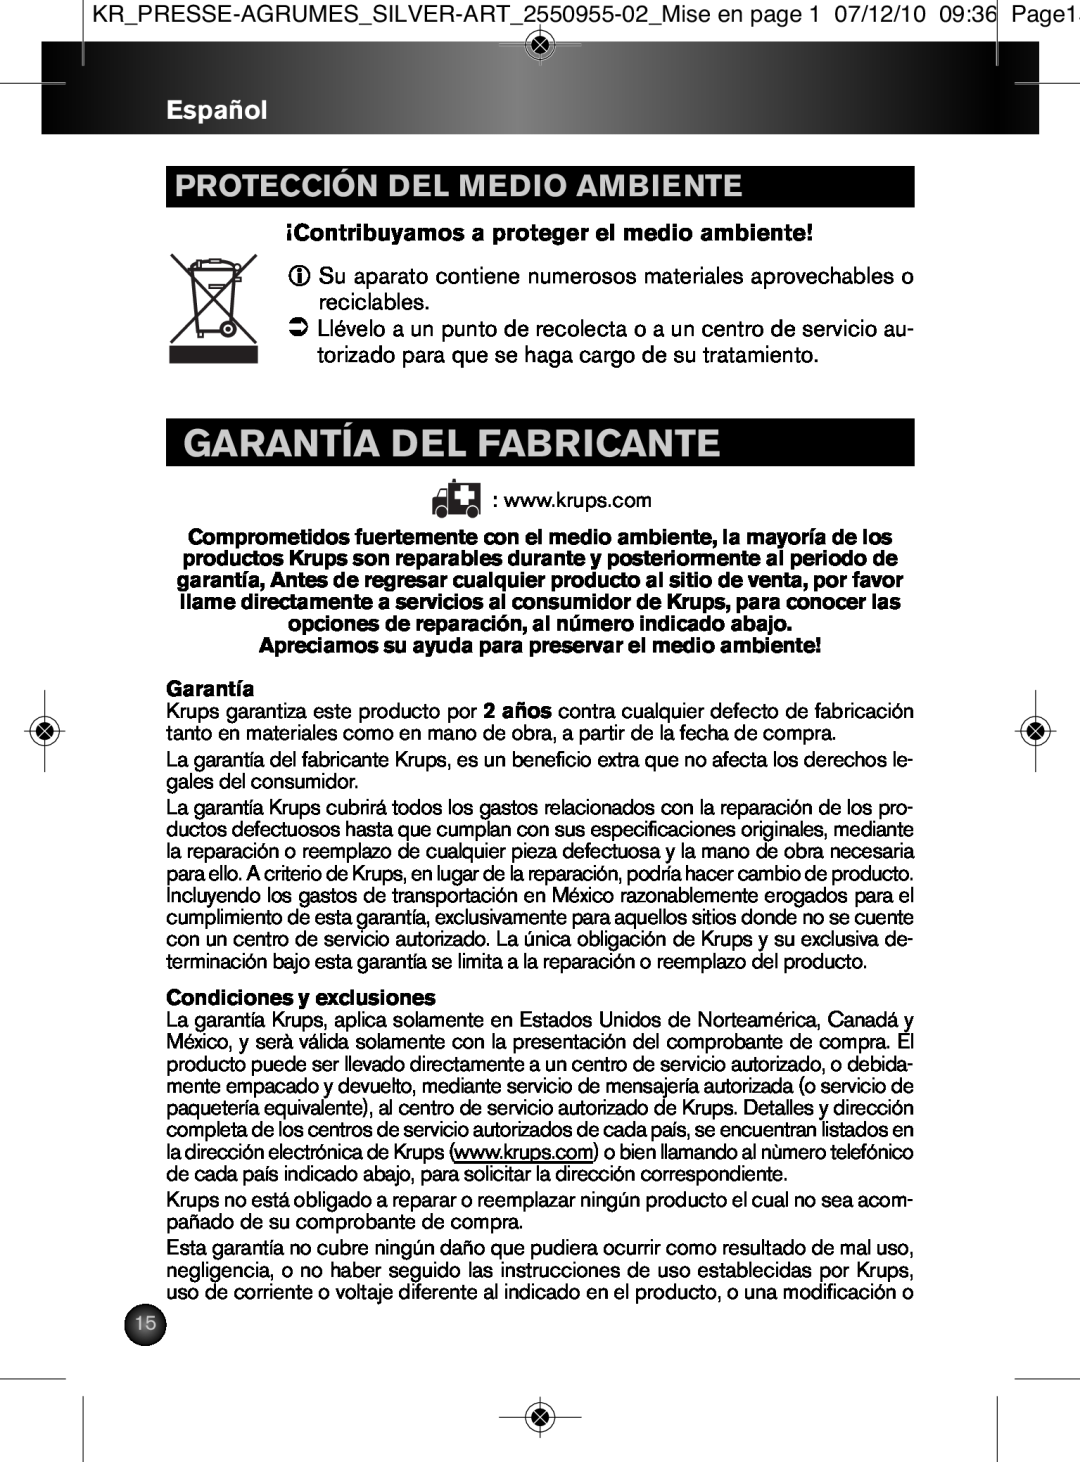 Krups 2550955-02 manual Garantía Del Fabricante, Protección Del Medio Ambiente, Español 